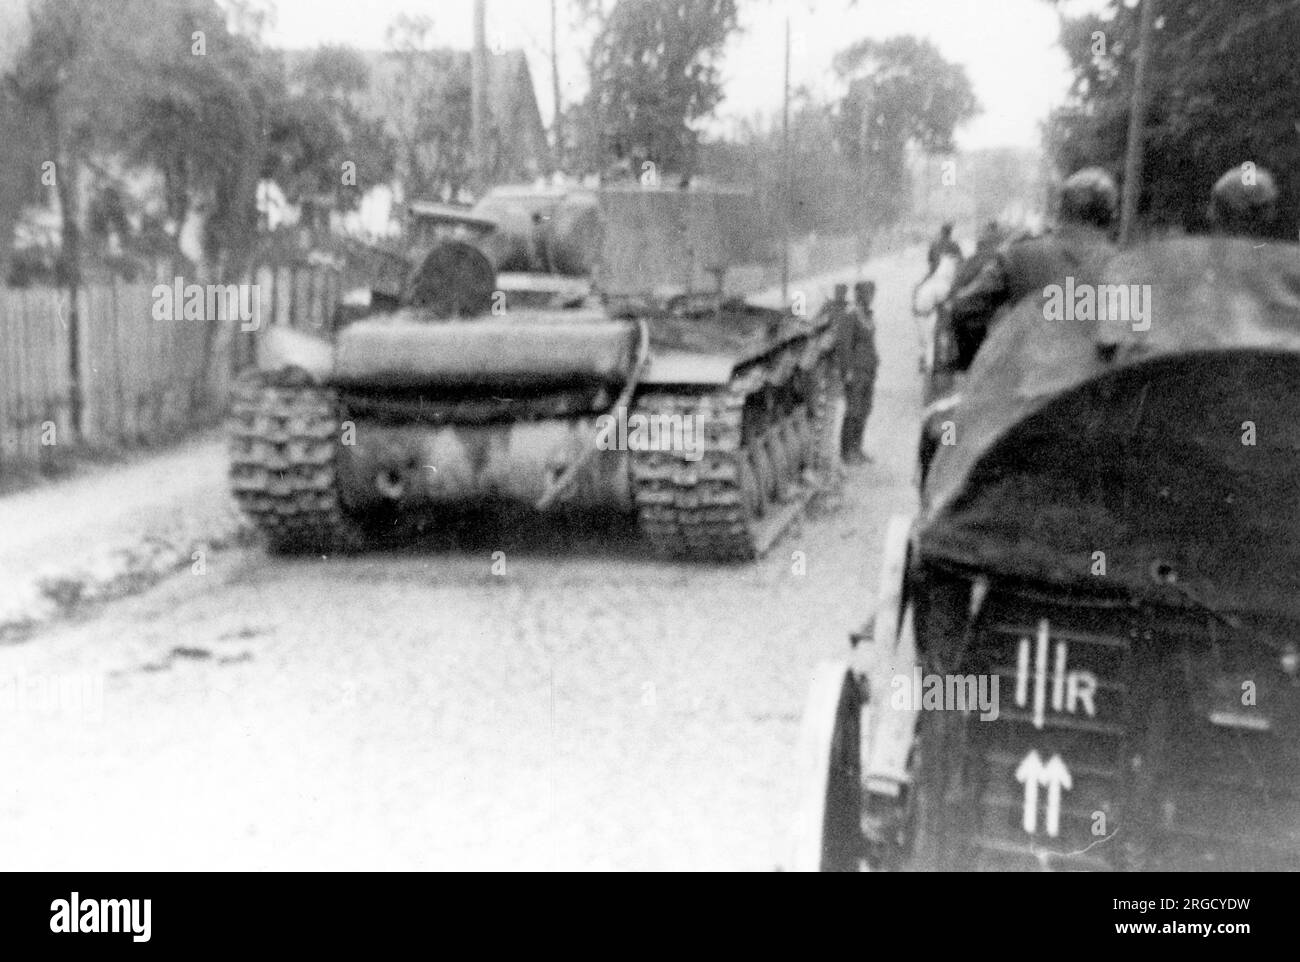 Un char lourd soviétique 'KV-1', frappé par un feu anti-char allemand, avec un camion Wehrmacht tiré par des chevaux le passant. (Les chars Kliment Voroshilov (KV) sont une série de chars lourds soviétiques nommés d'après le commissaire de la défense soviétique et le politicien Kliment Voroshilov) Banque D'Images